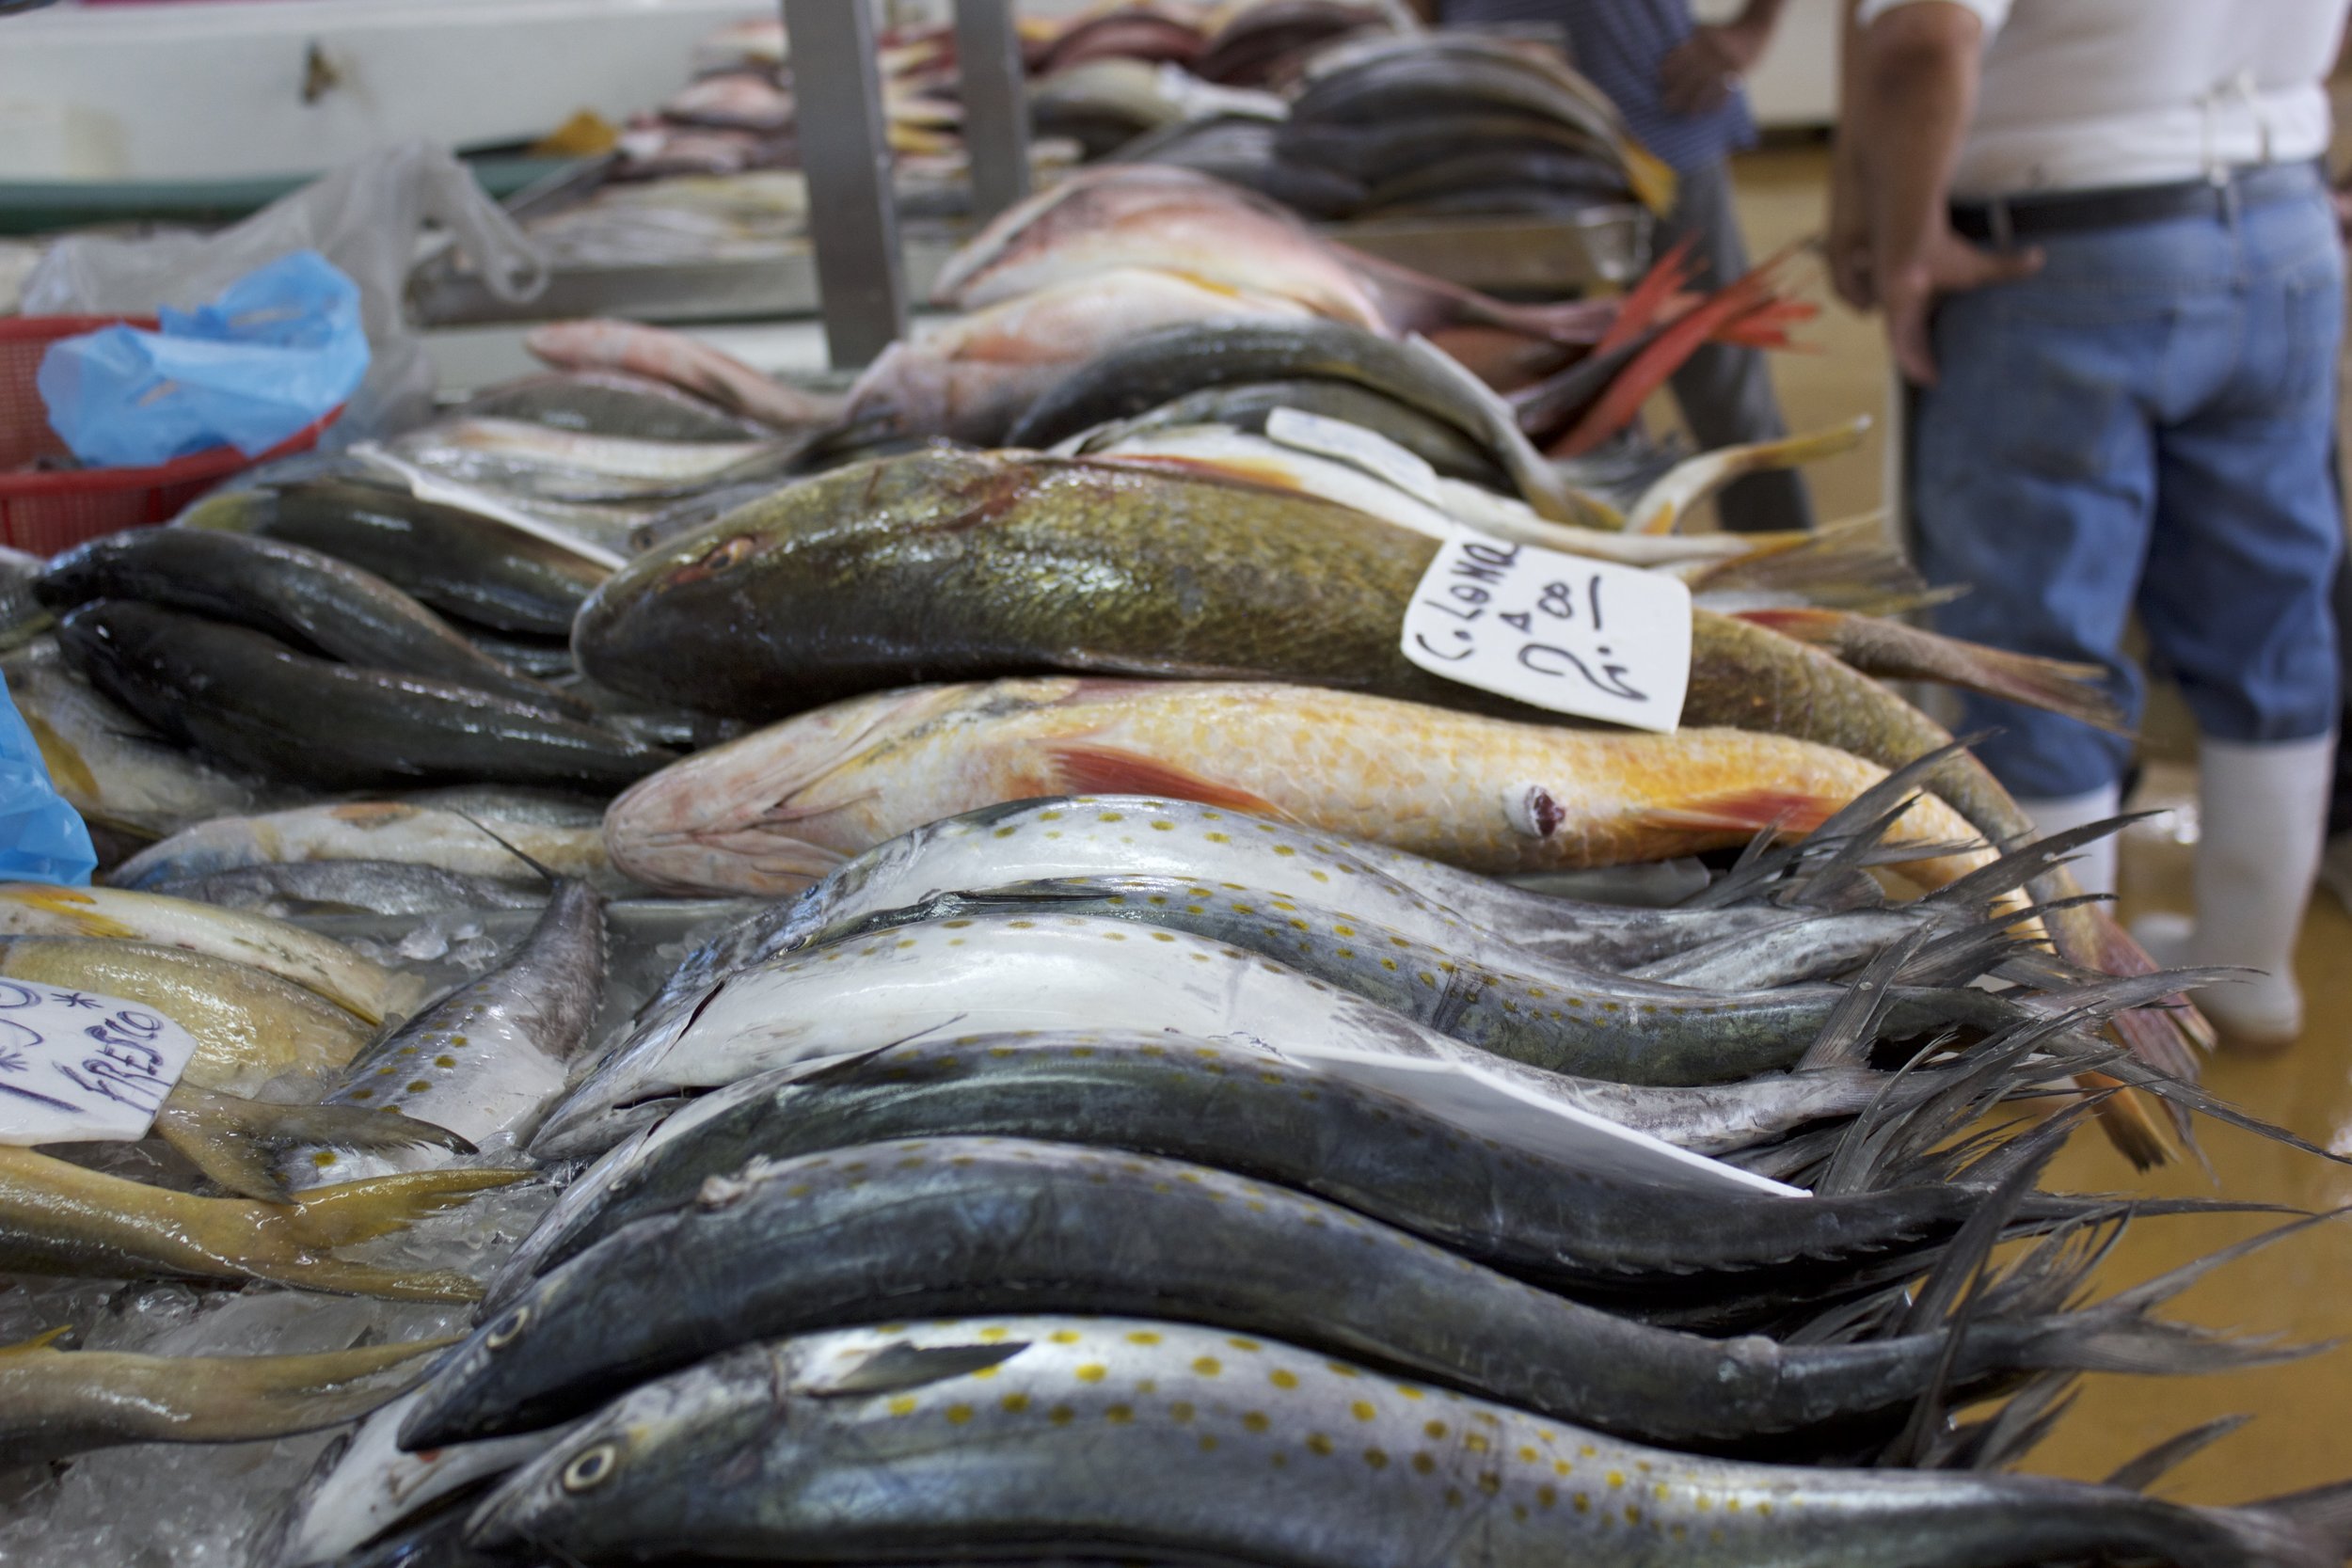 Fish at the market.jpg